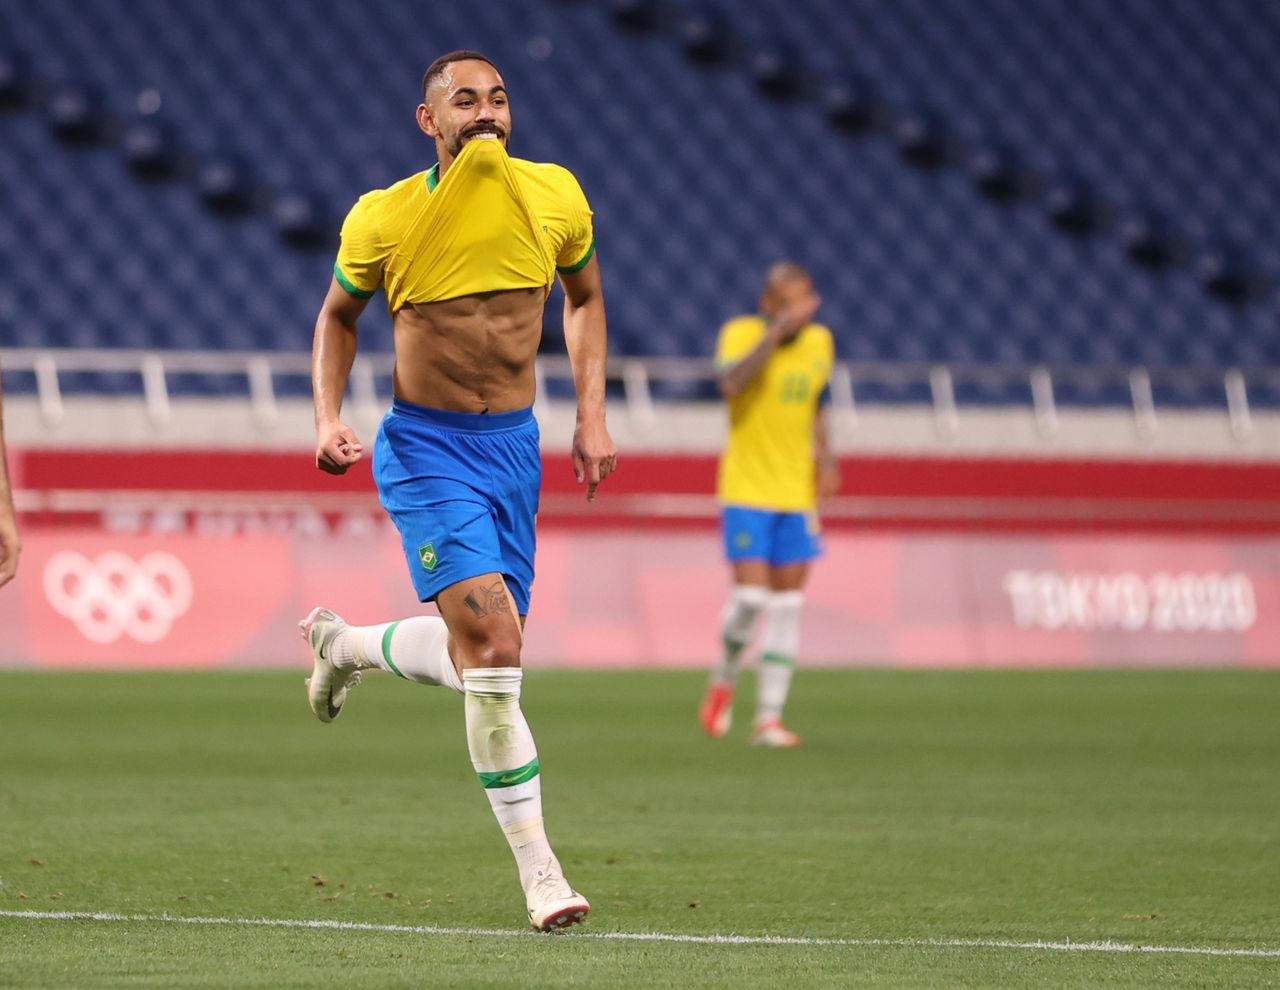 Jul 31, 2021. 
Foto del sábado del futbolista Matheus Cunha  celebrando tras marcar el gol de Brasil en la victoria 1-0 sobre Egipto. 
REUTERS/Molly Darlington